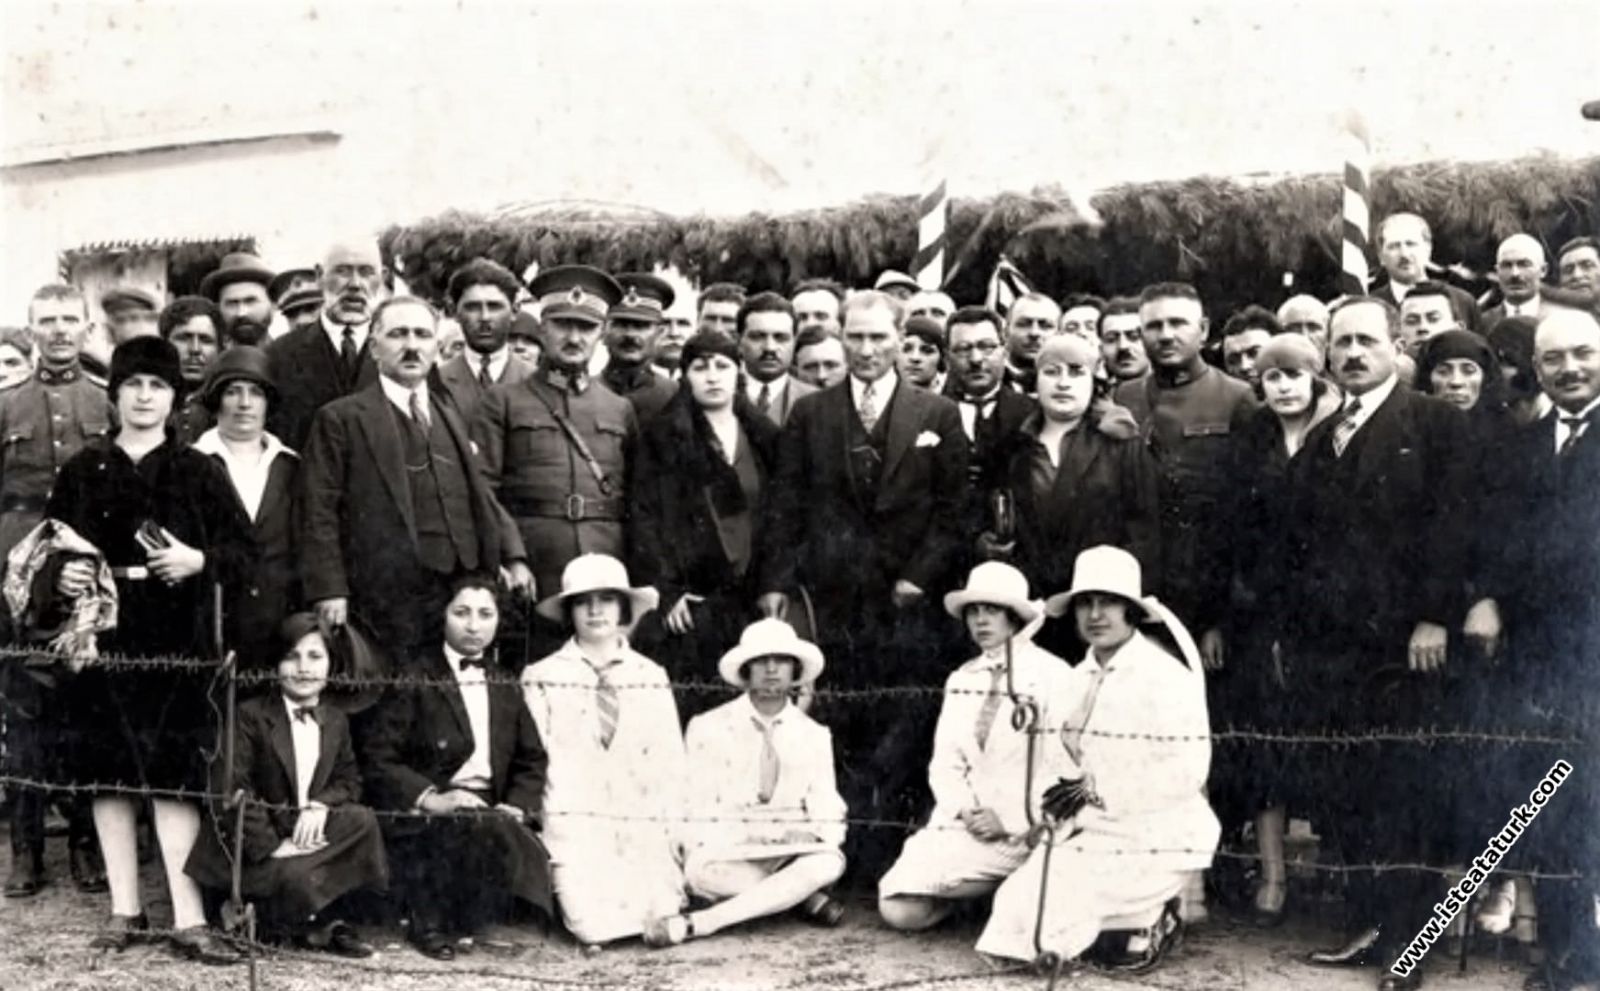 Bilecik Bozüyük'te Çolak İbrahim Bey'in kereste fabrikasını ziyareti sırasında. (20.05.1926)